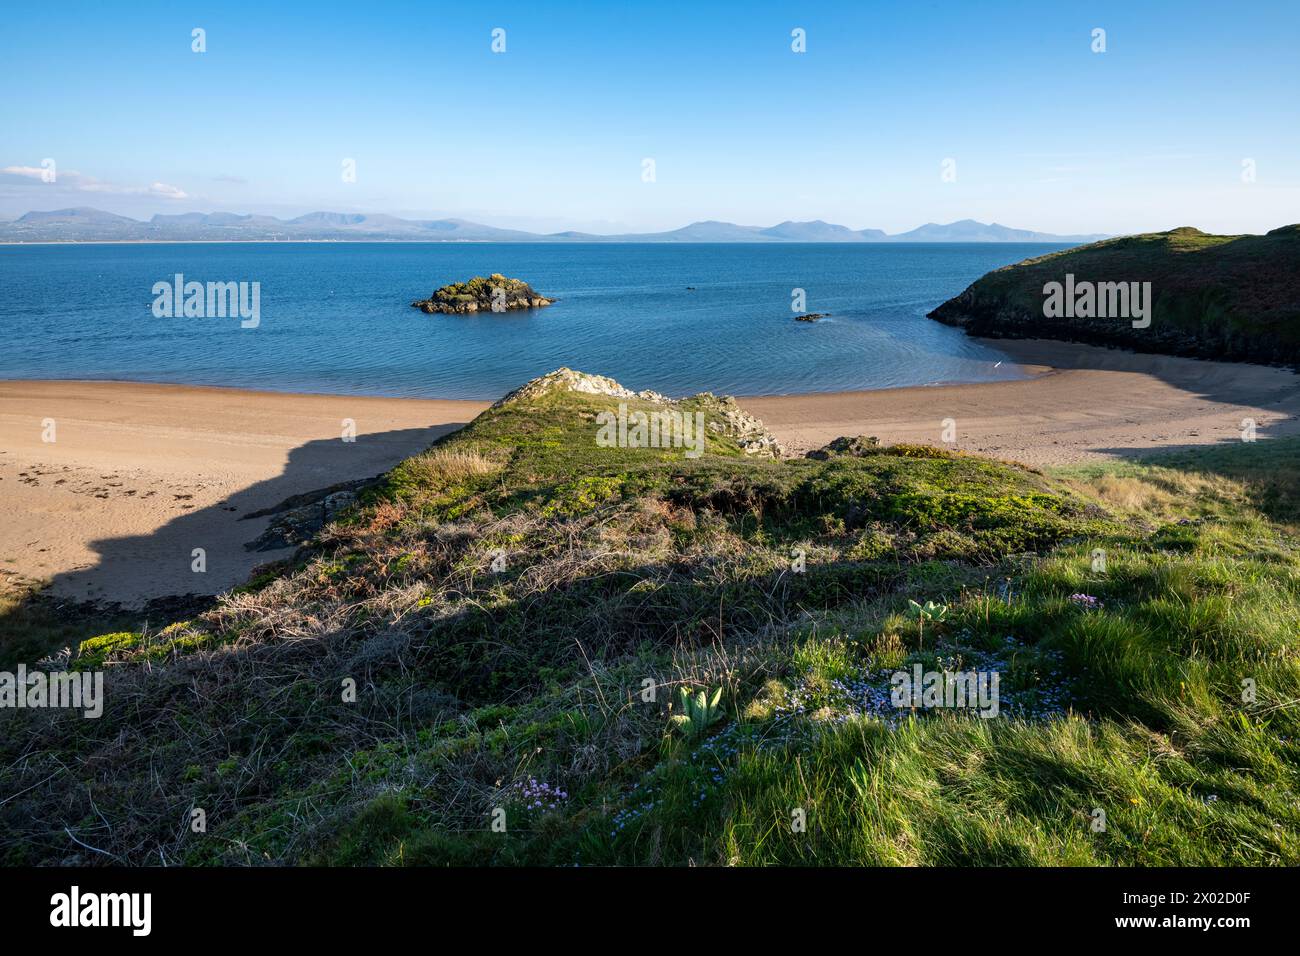 Belle vue depuis l'île de Llanddwyn sur Anglesey avec les montagnes du continent gallois à l'horizon. Banque D'Images